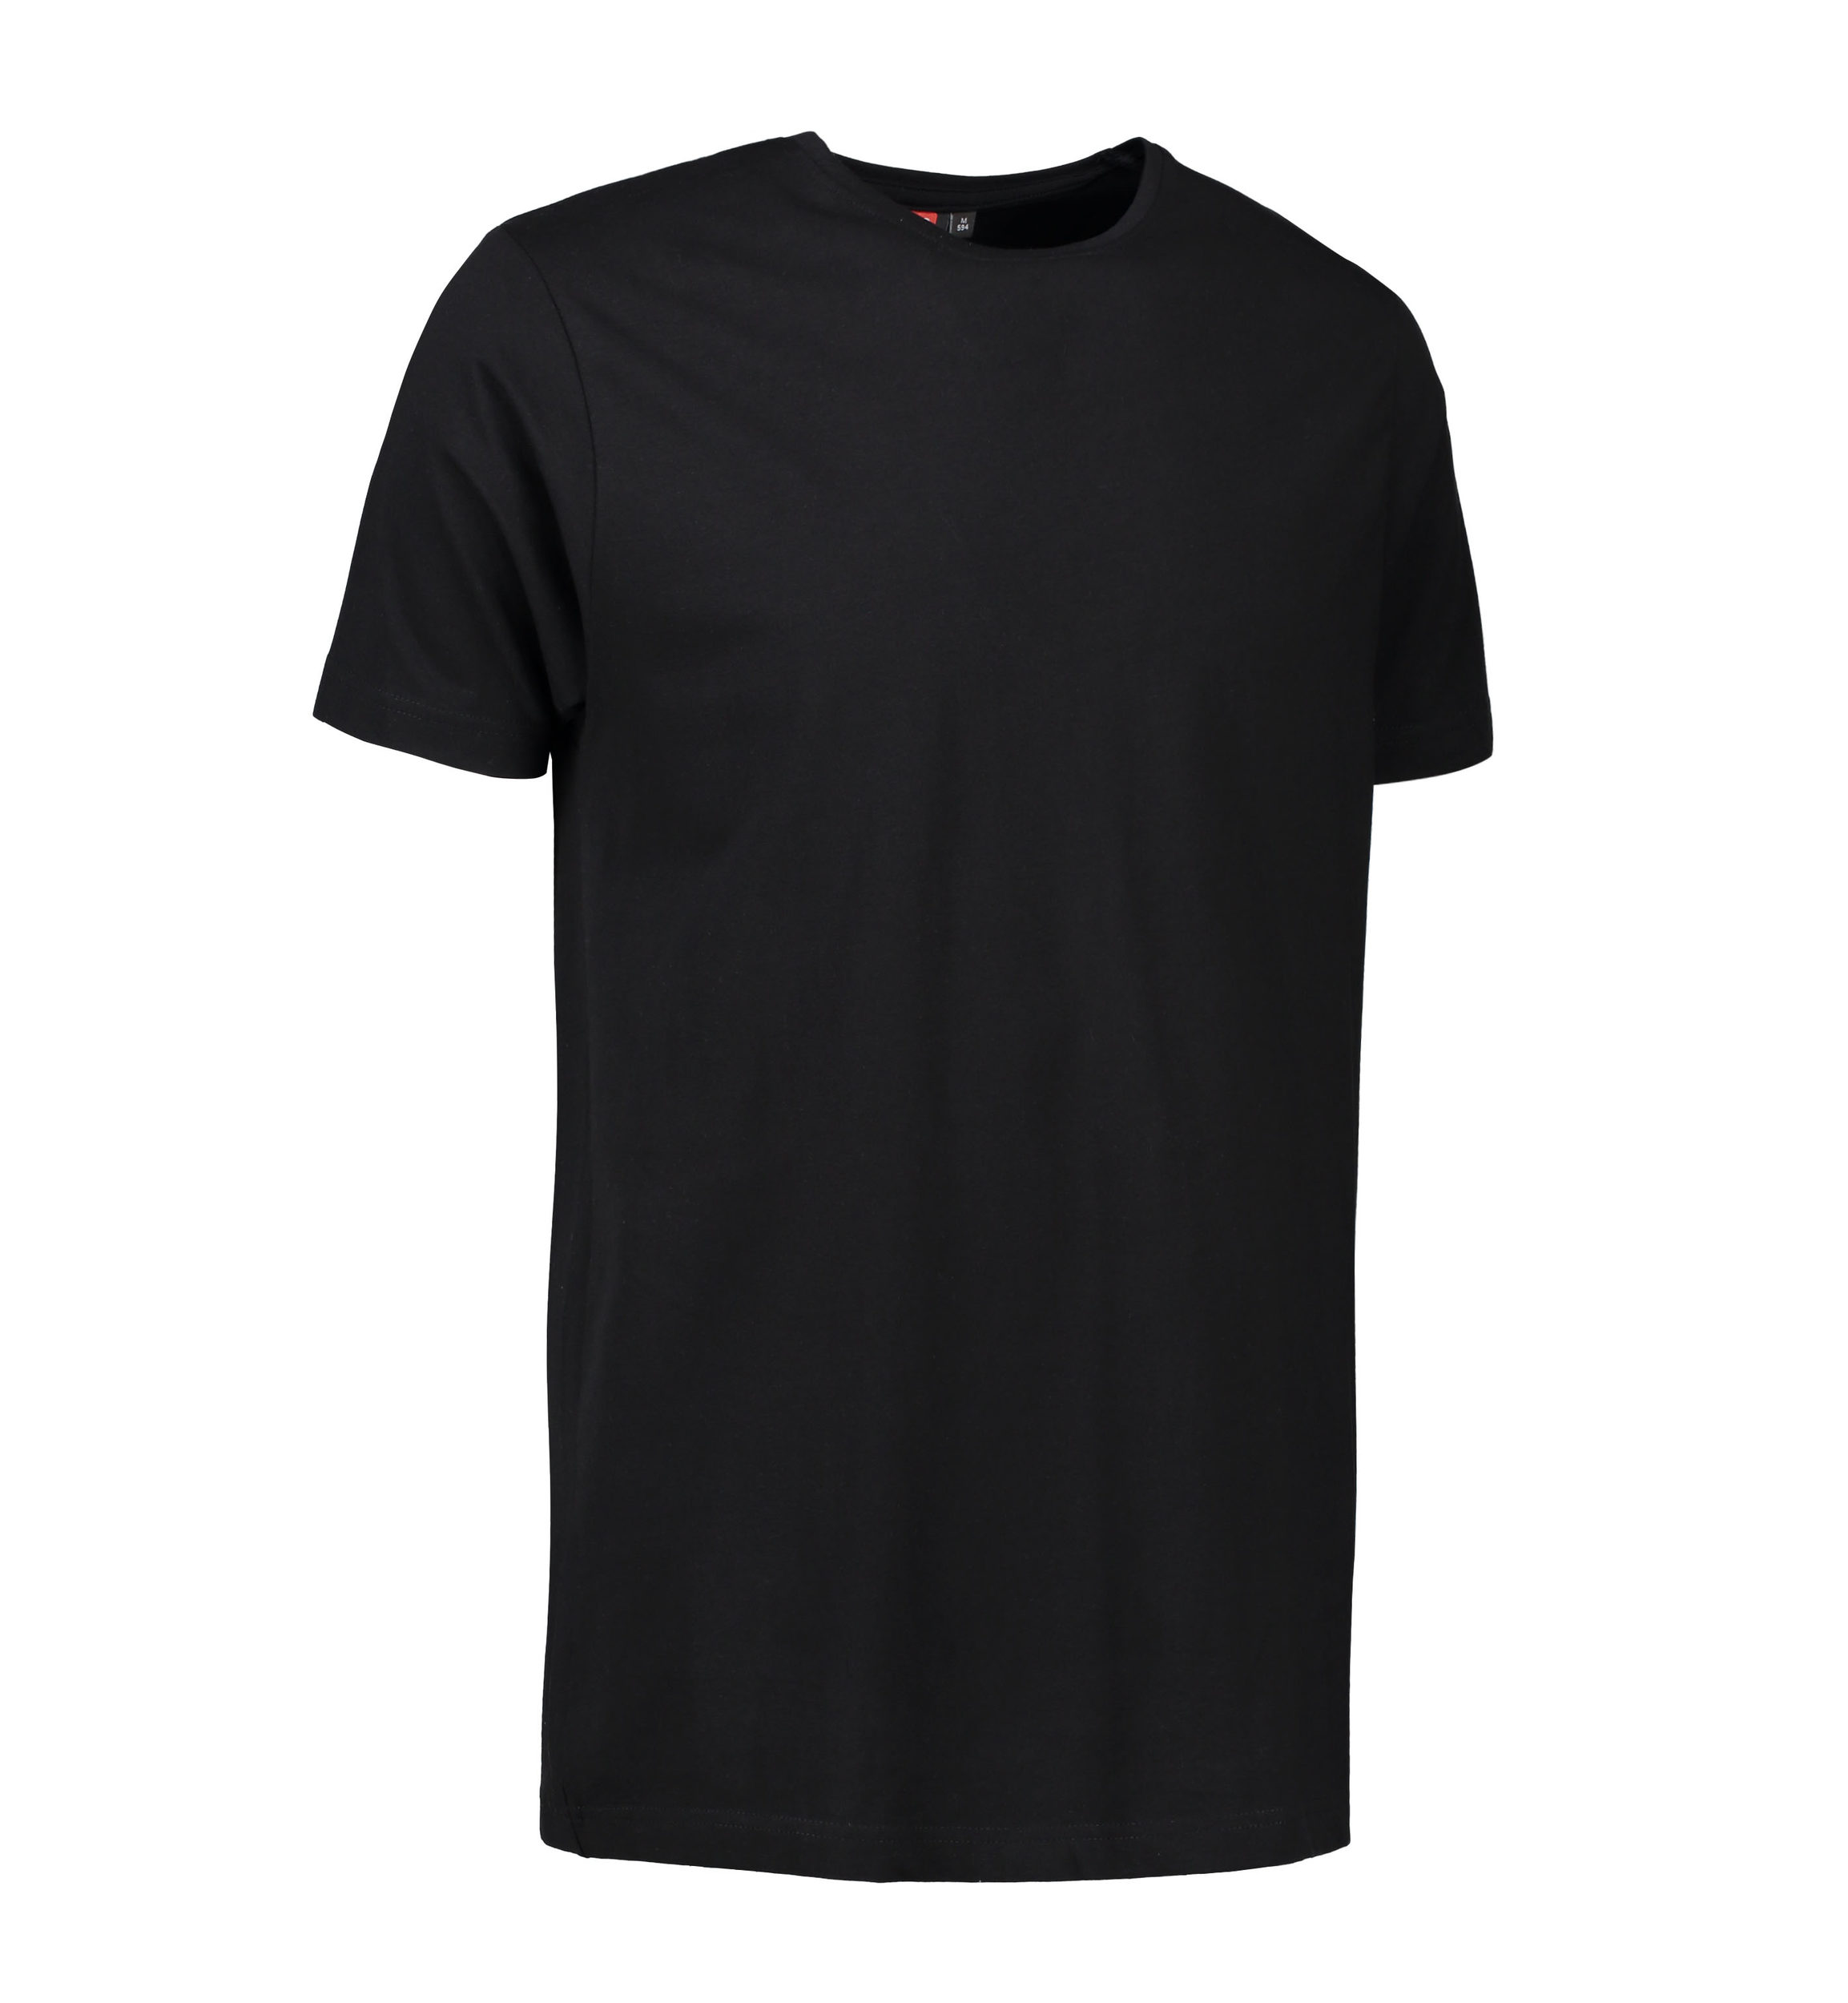 Billede af Stretch t-shirt til mænd i sort - L hos Sygeplejebutikken.dk